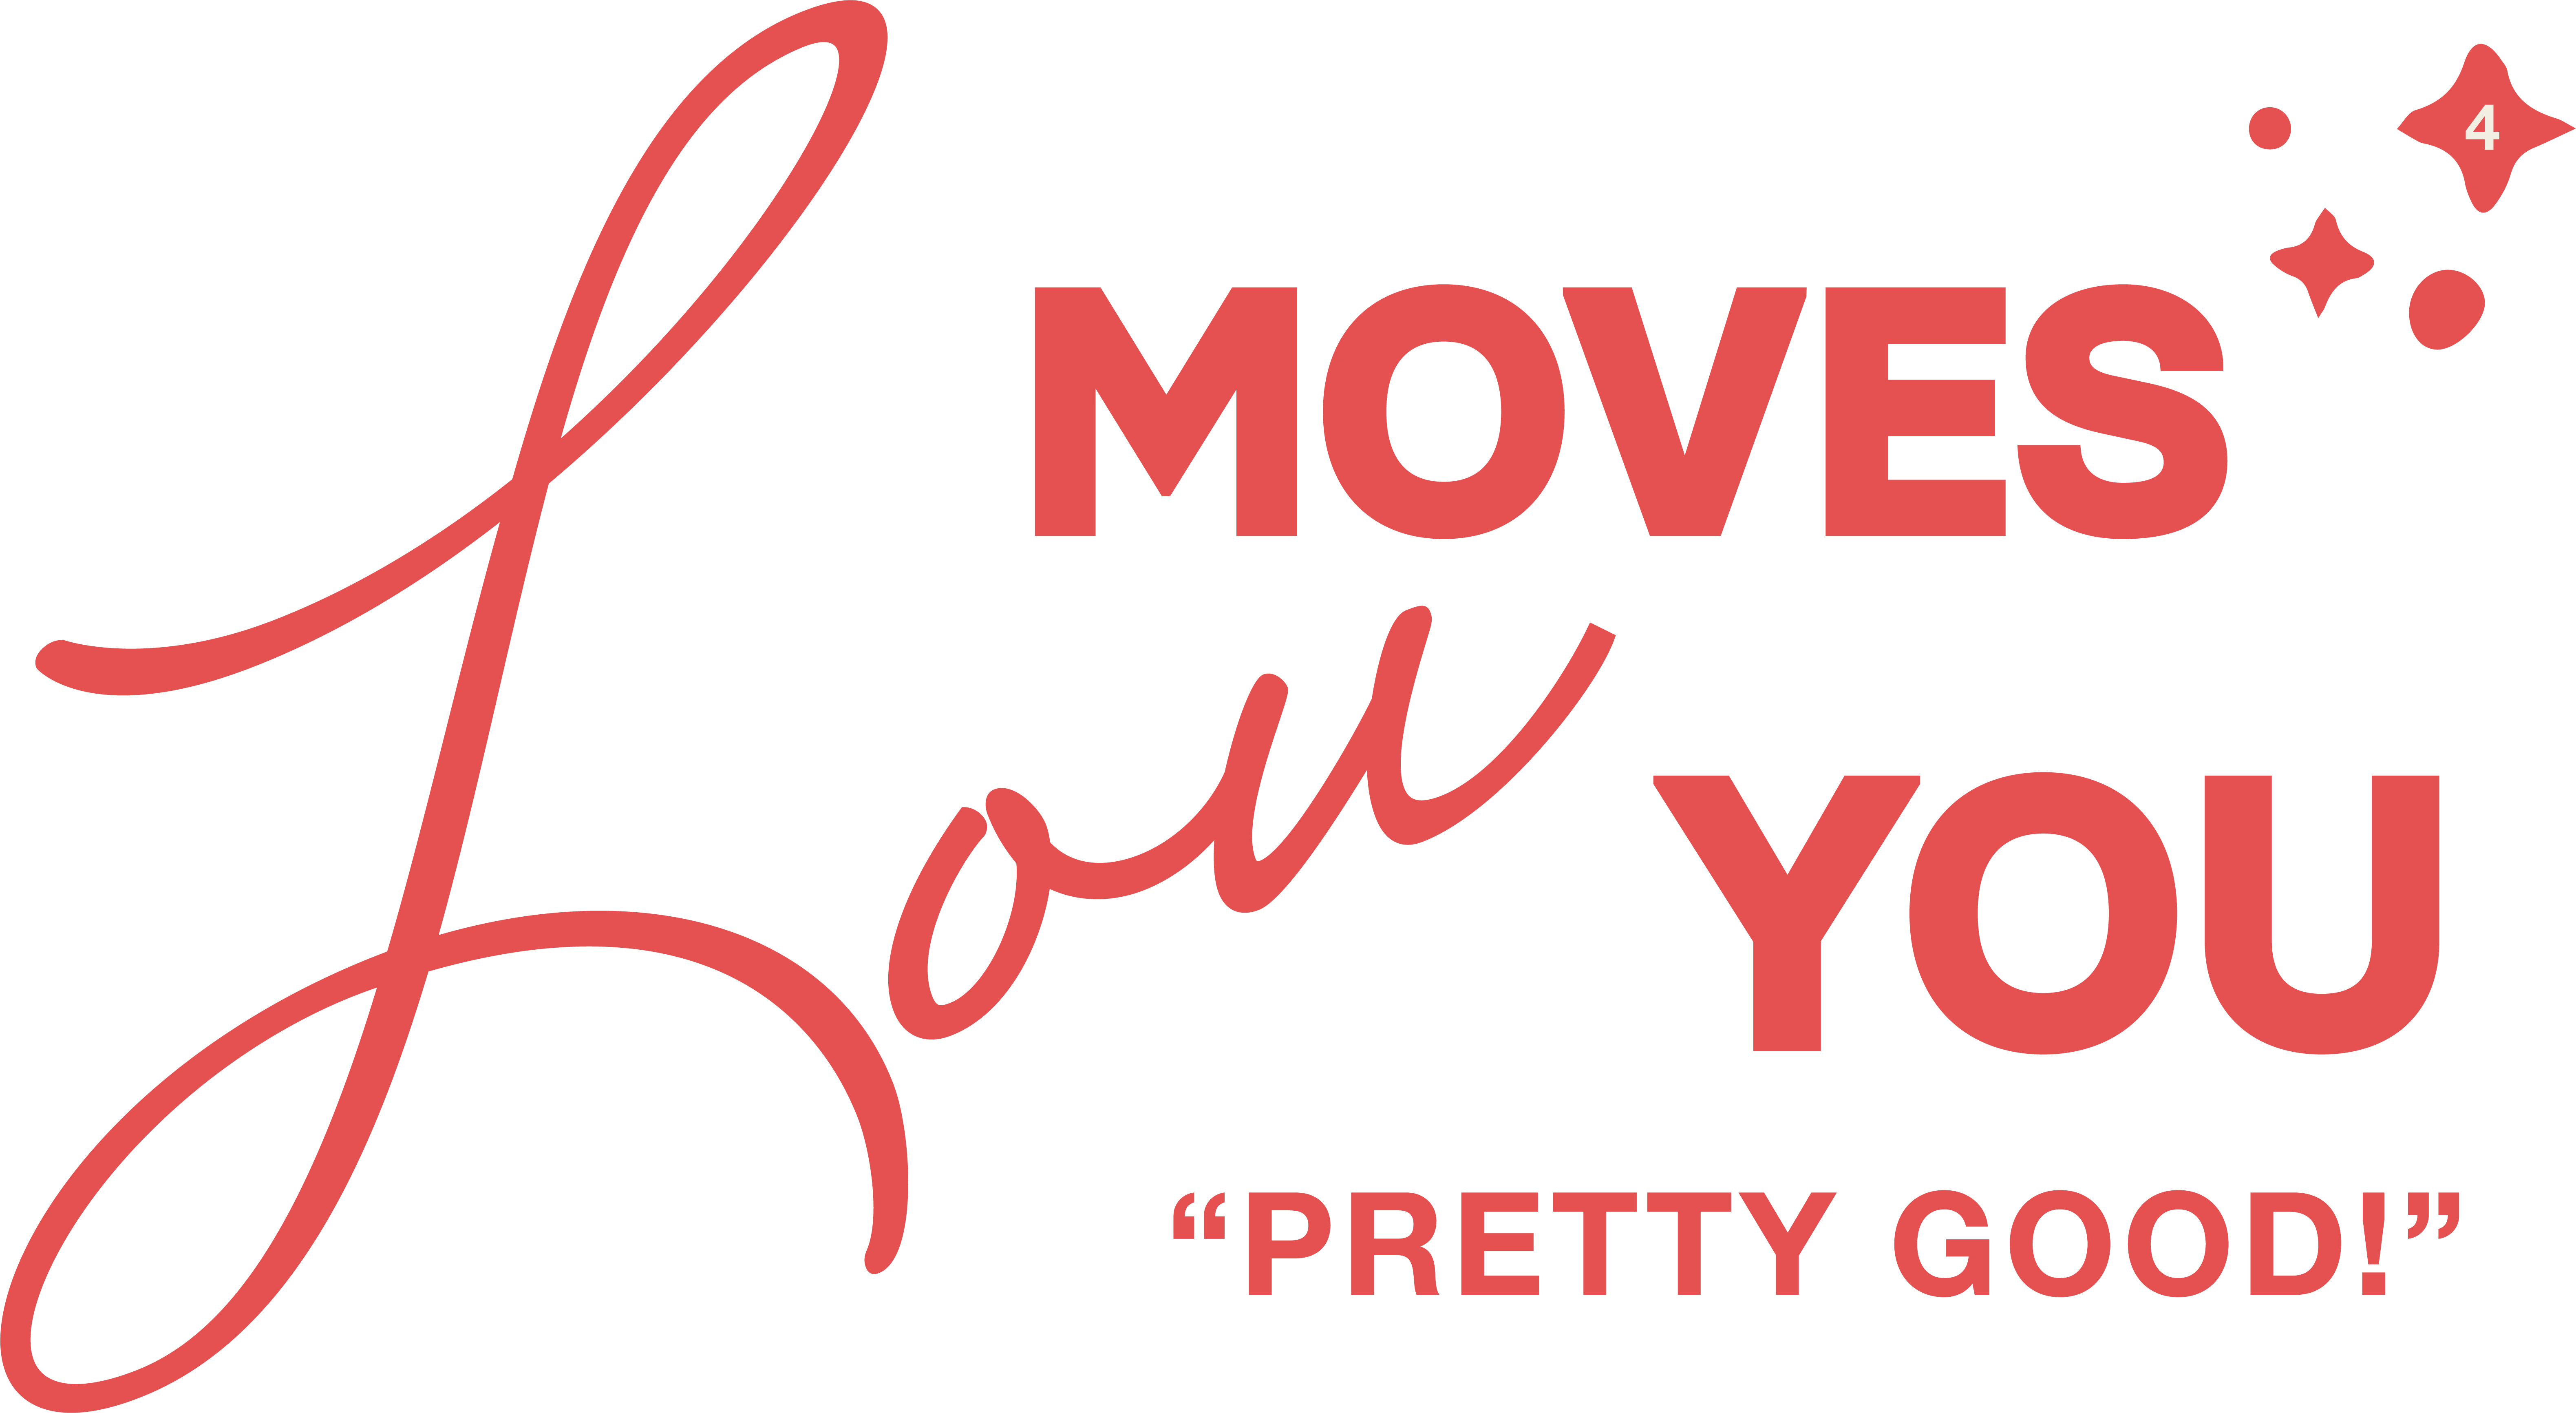 Abreu Movers Queens - Moving Company Queens - Ph (917) 924-9221